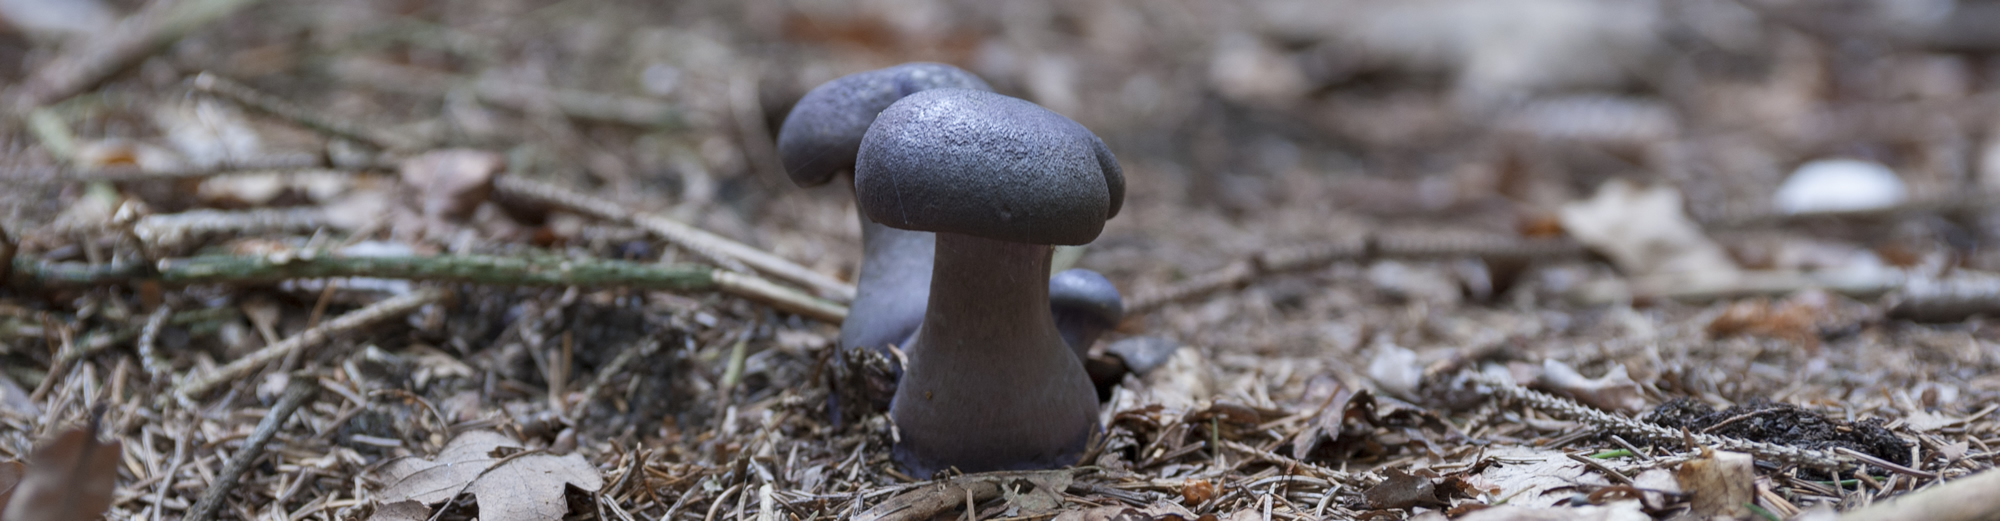 Zwei Pilze auf einem Waldboden